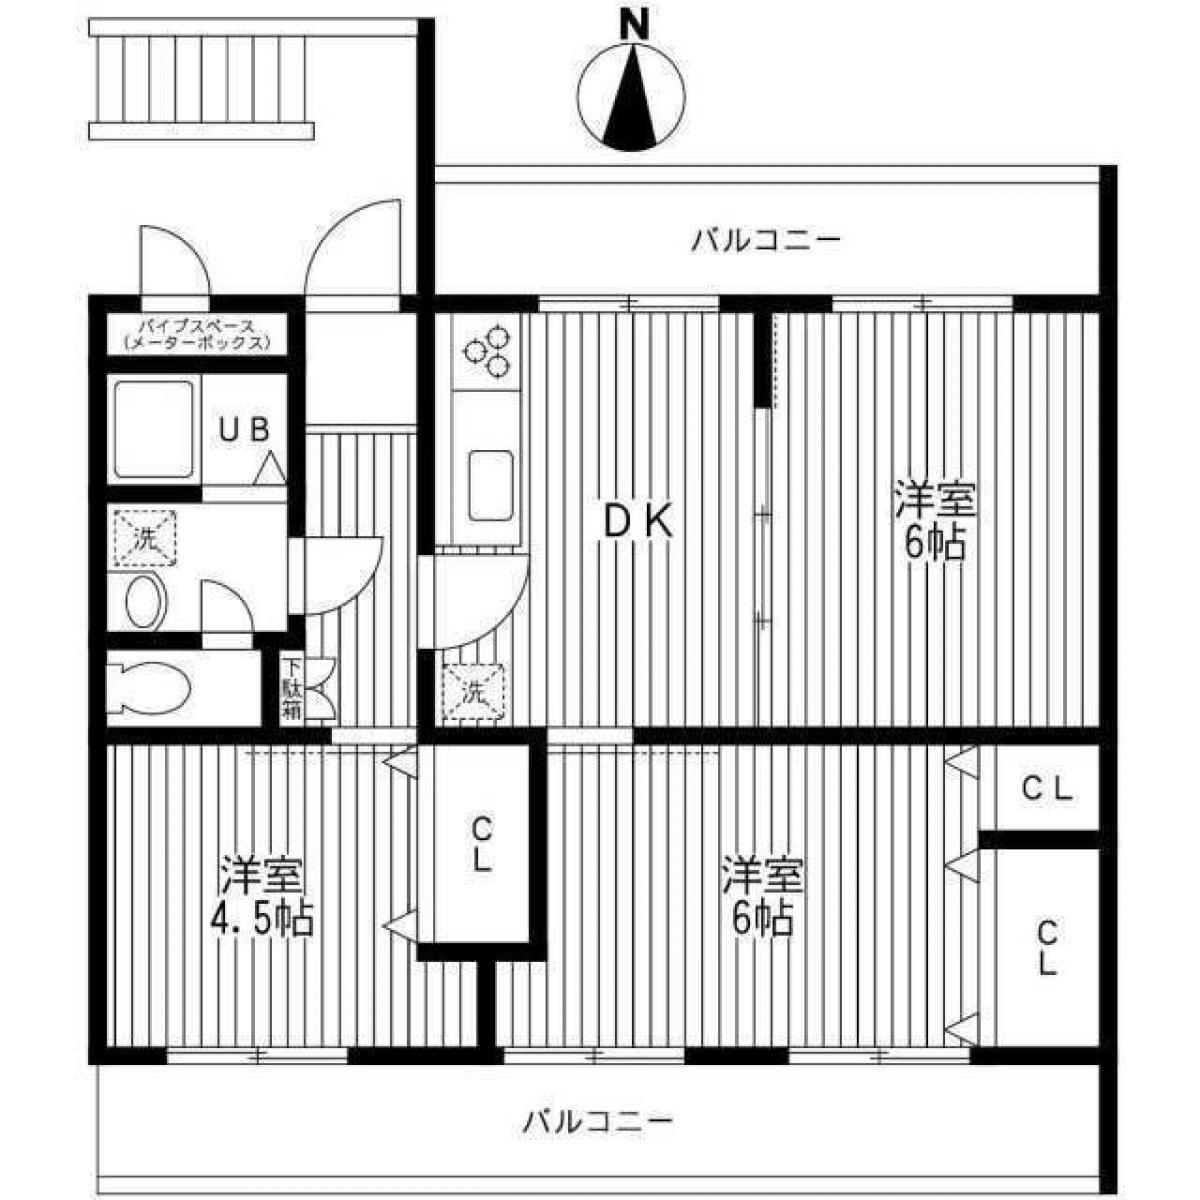 Picture of Apartment For Sale in Kawasaki Shi Asao Ku, Kanagawa, Japan